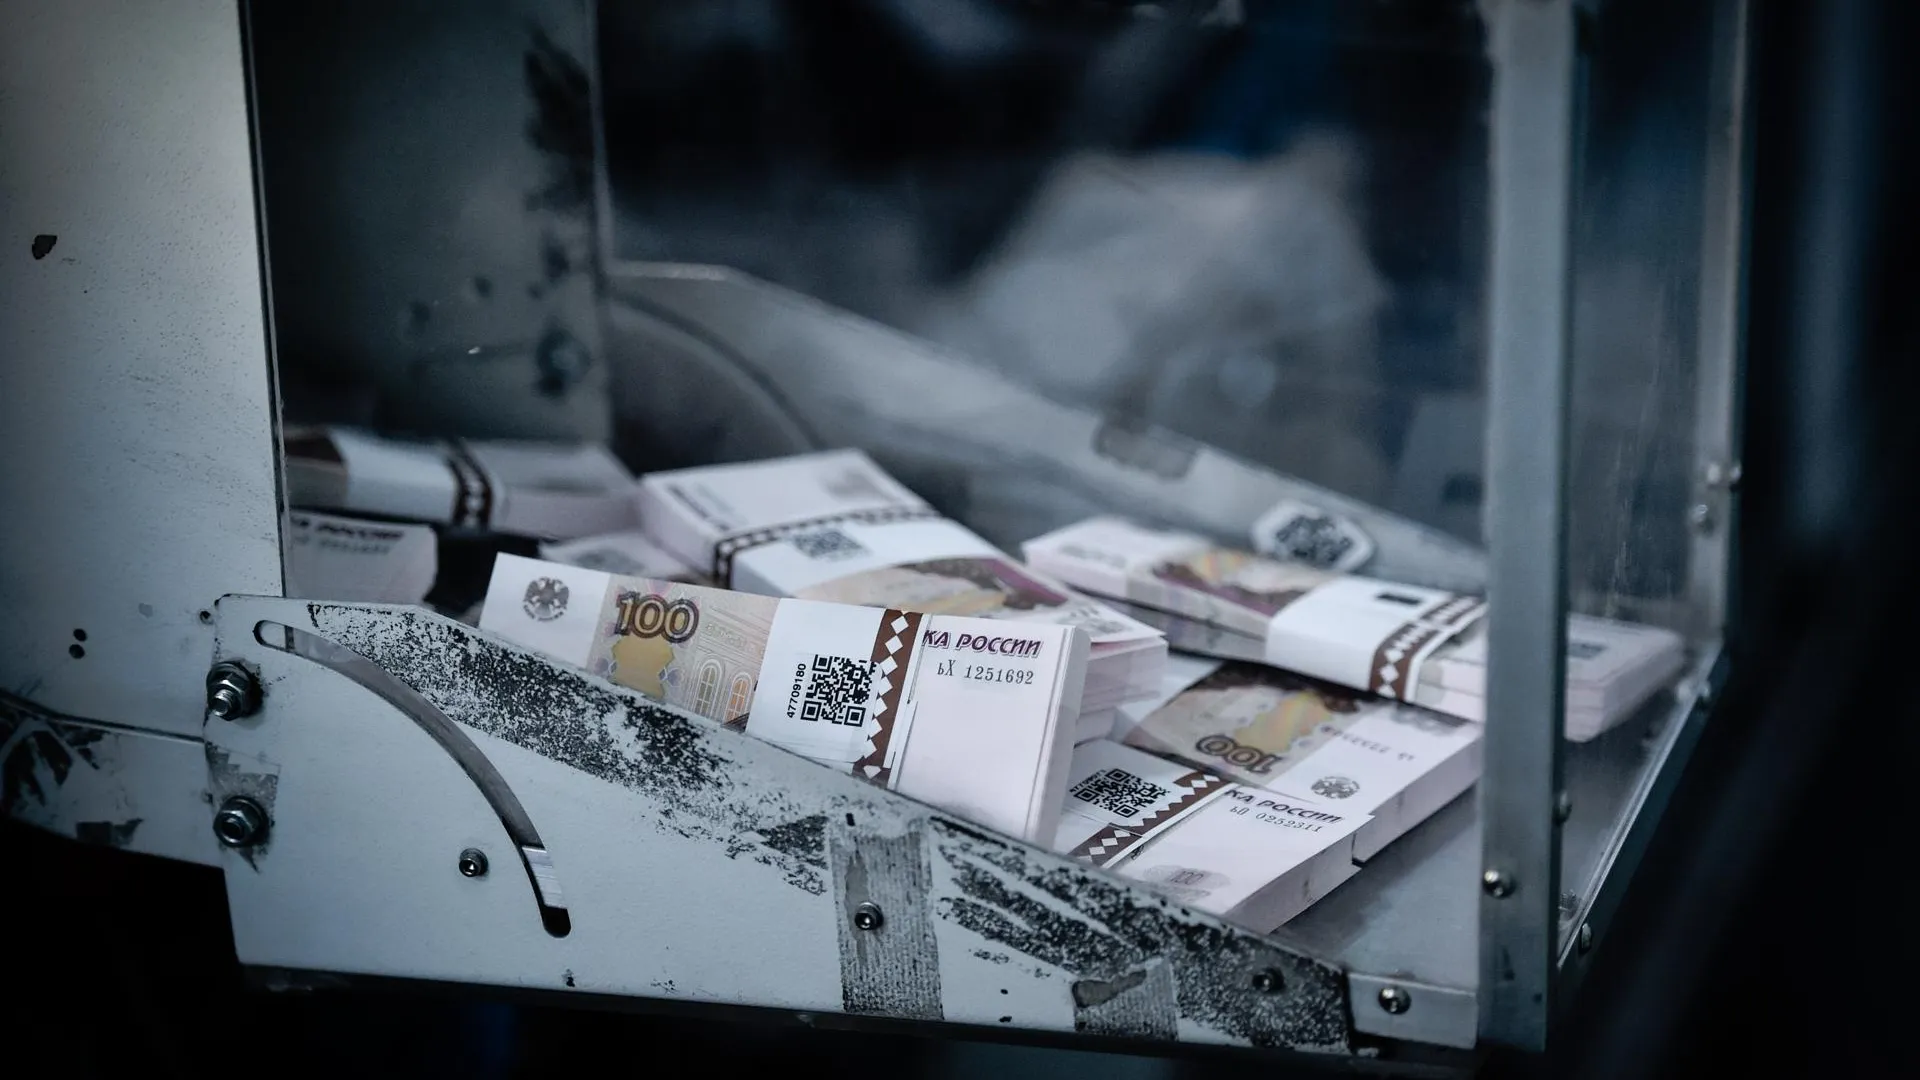 Полицейские раскрыли крупный канал сбыта поддельных денег в Москве